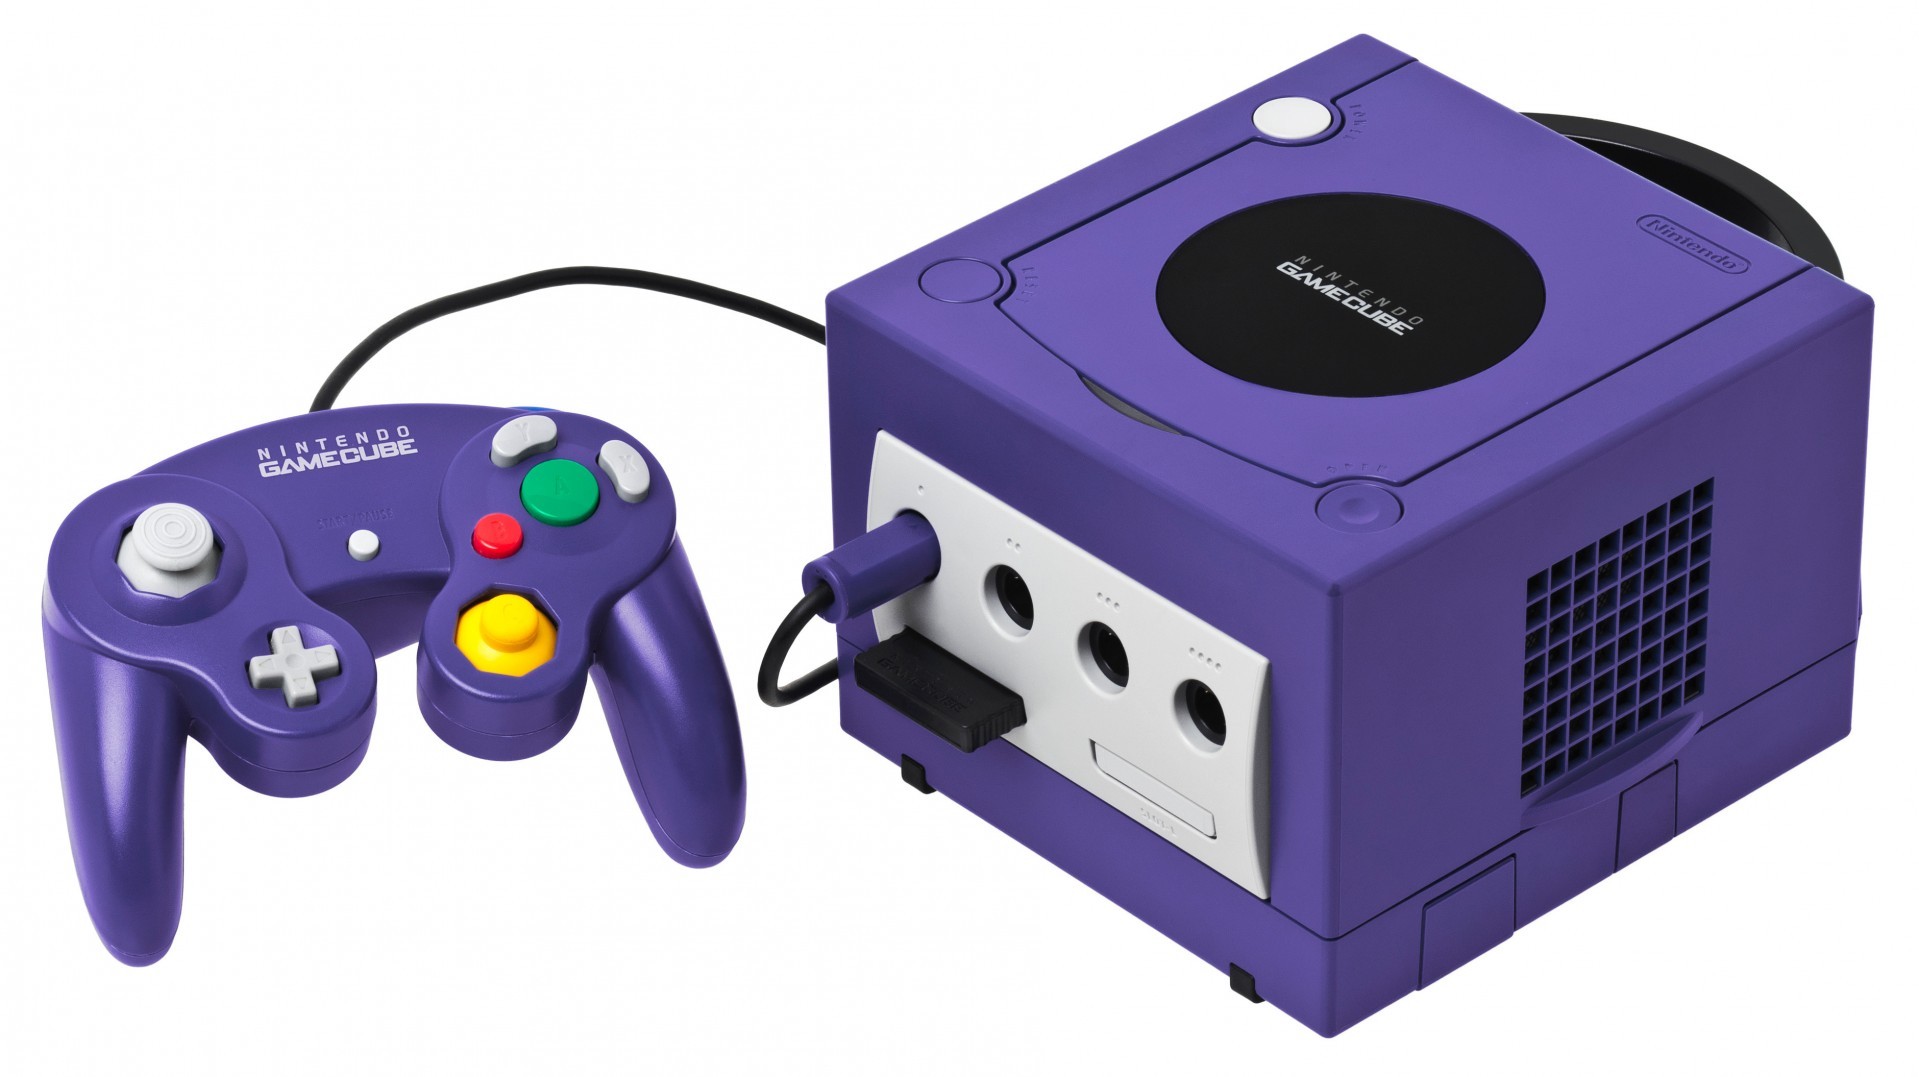 Nintendo GameCube 主機迎接誕生 20 周年紀念 承先啟後的獨特遊戲方塊